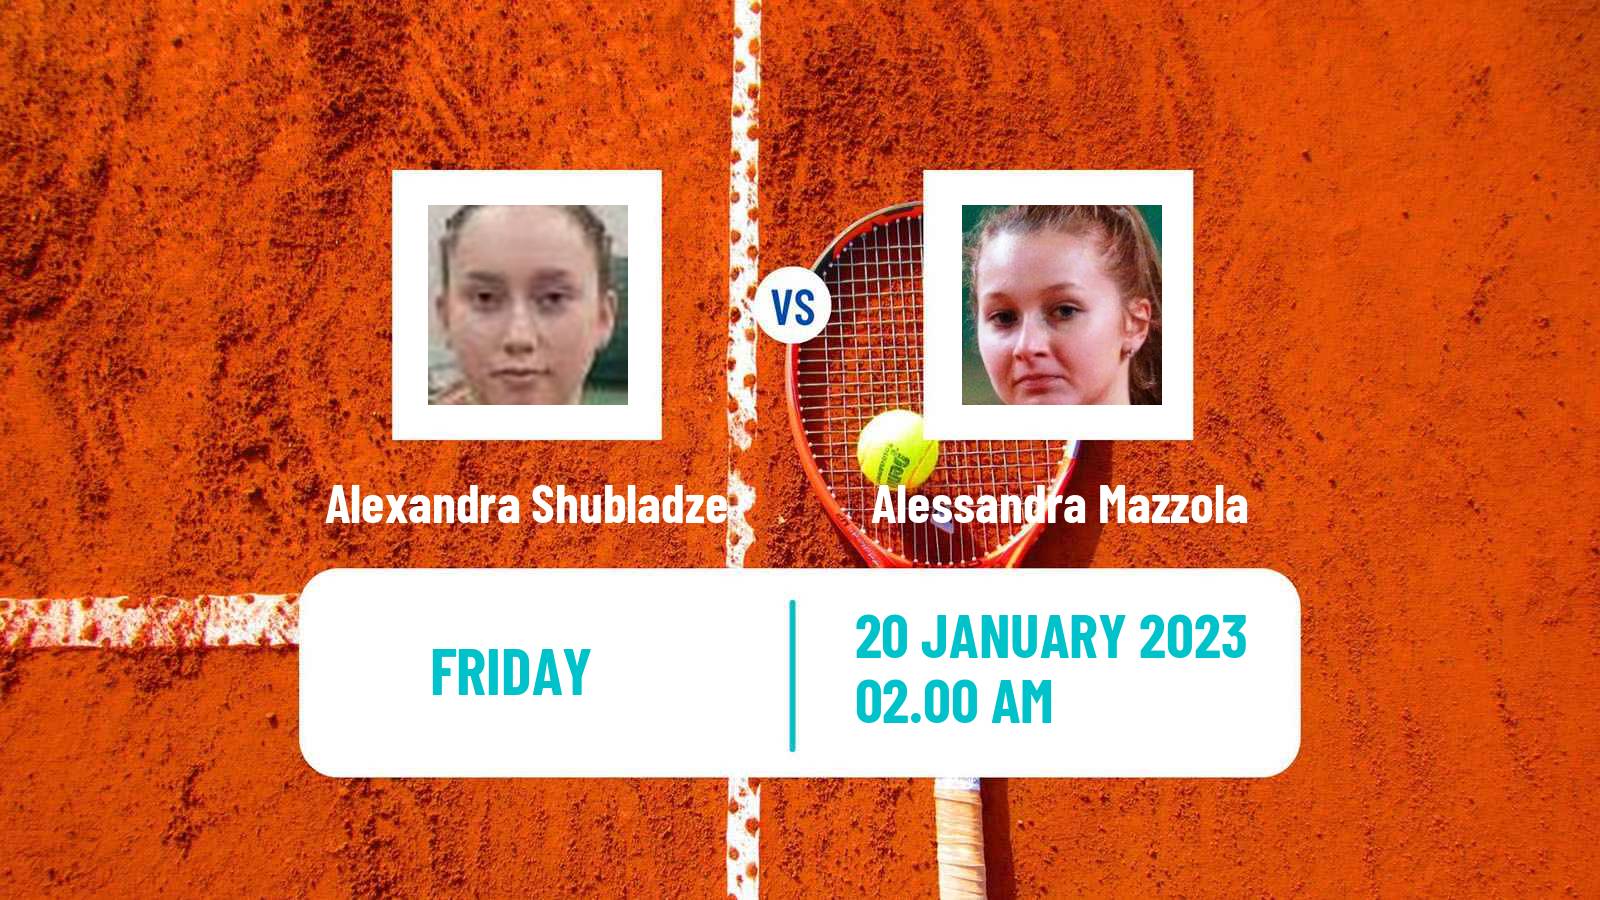 Tennis ITF Tournaments Alexandra Shubladze - Alessandra Mazzola